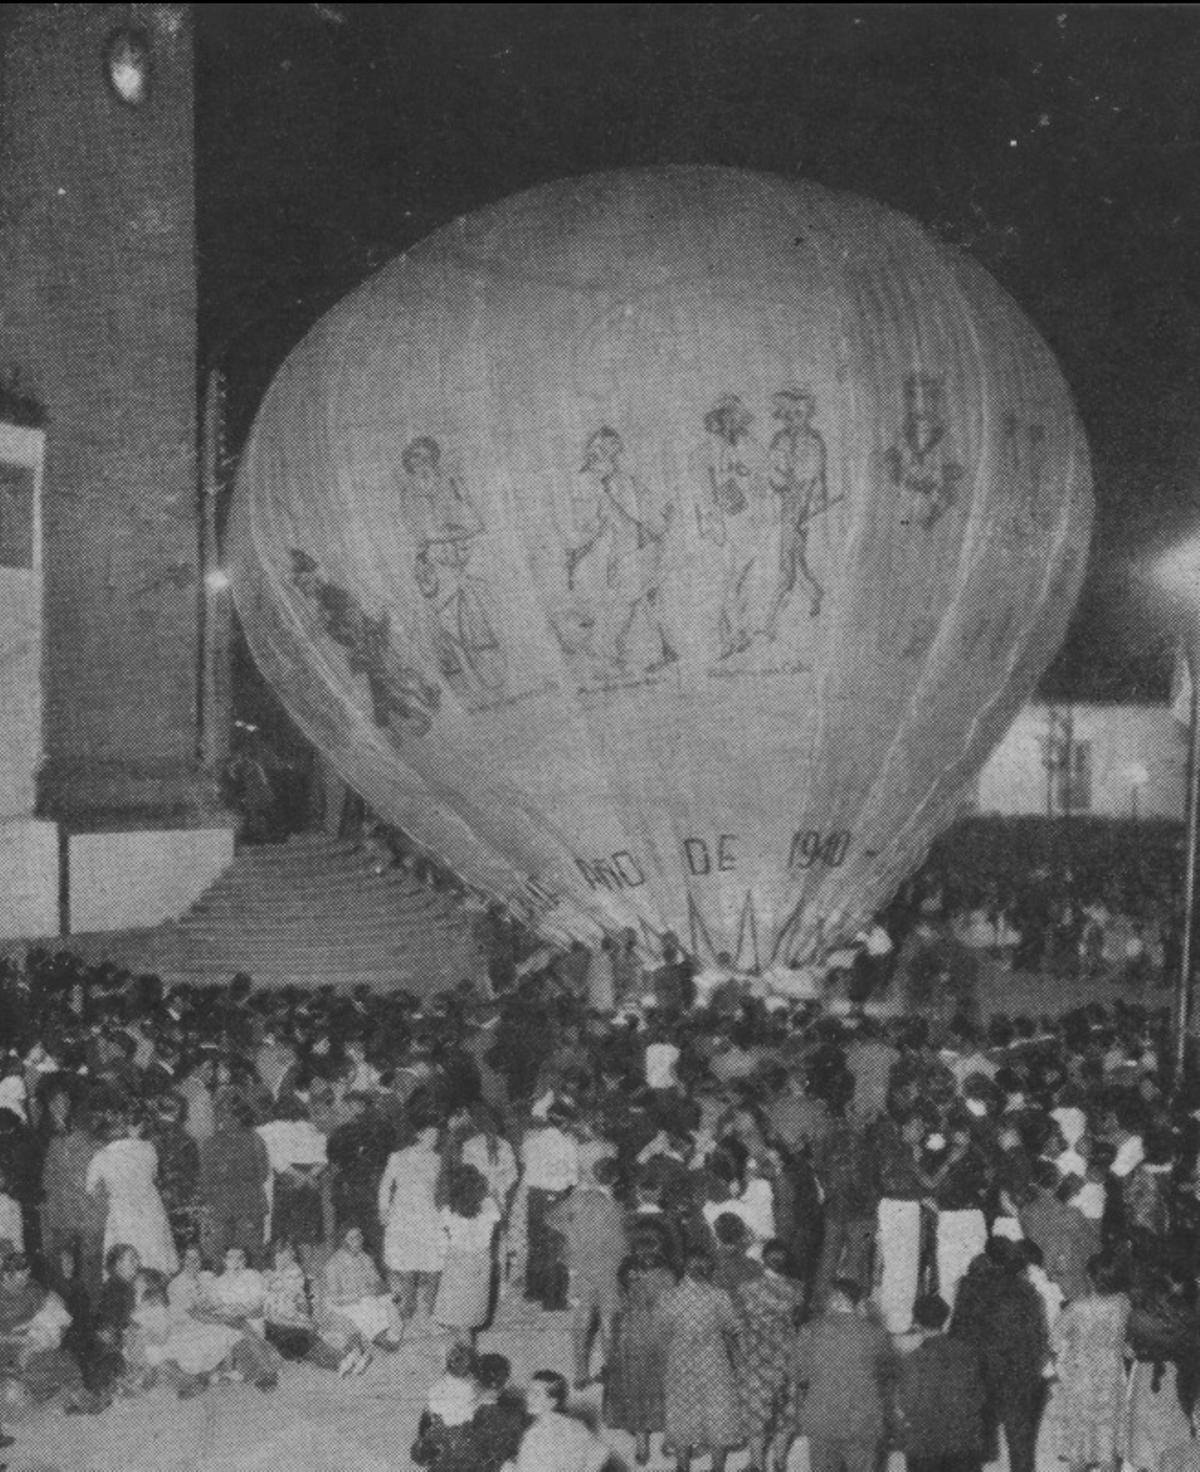 Lanzamiento del globo de Betanzos en 1940